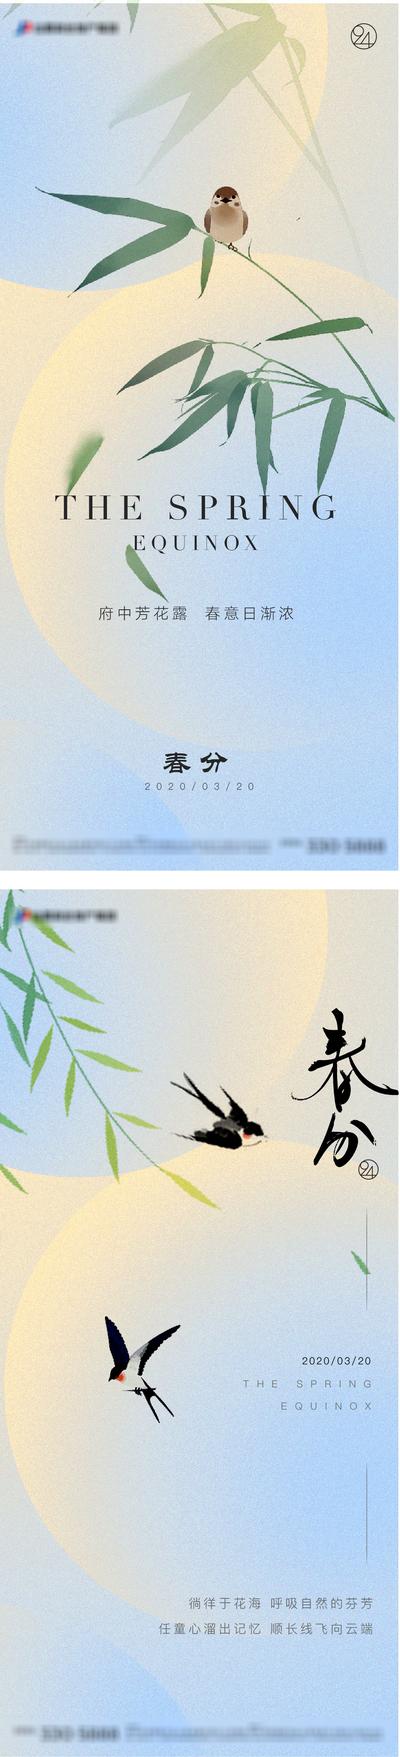 南门网 广告 海报 节气 春分 燕子 系列 清新